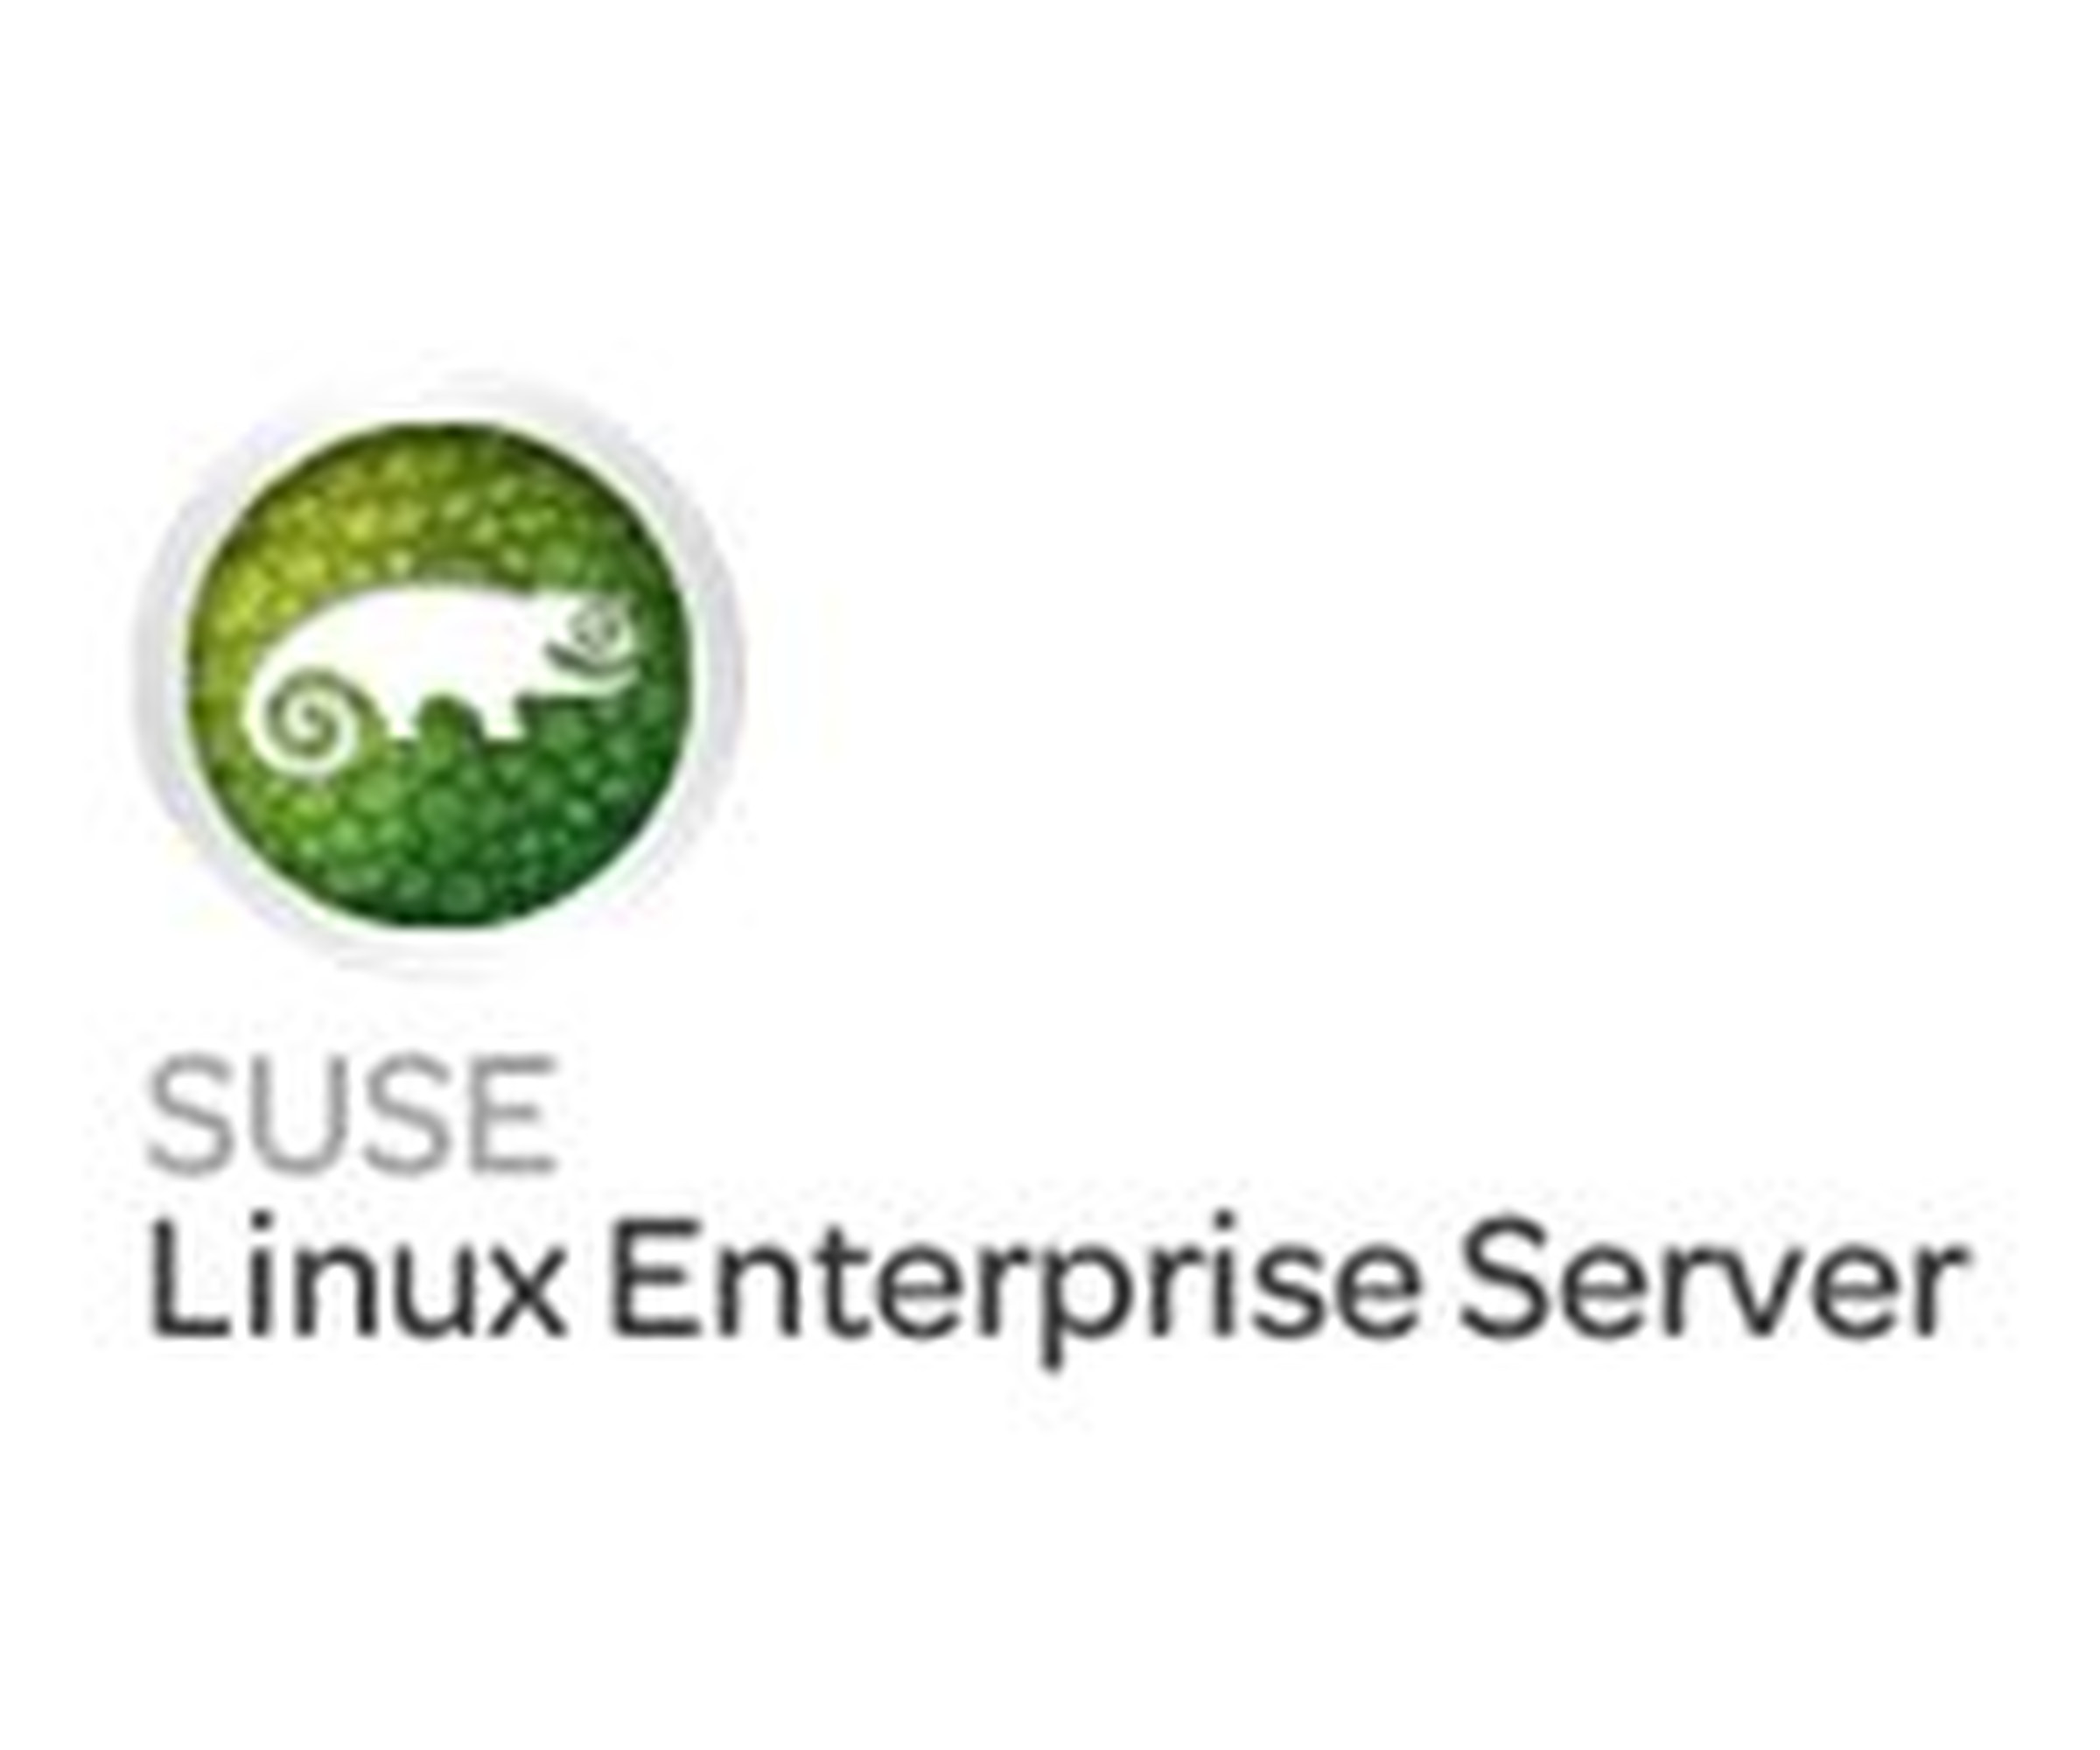 HP Enterprise SuSE Linux Enterprise Server for SAP - Standardabonnement (3 Jahre)